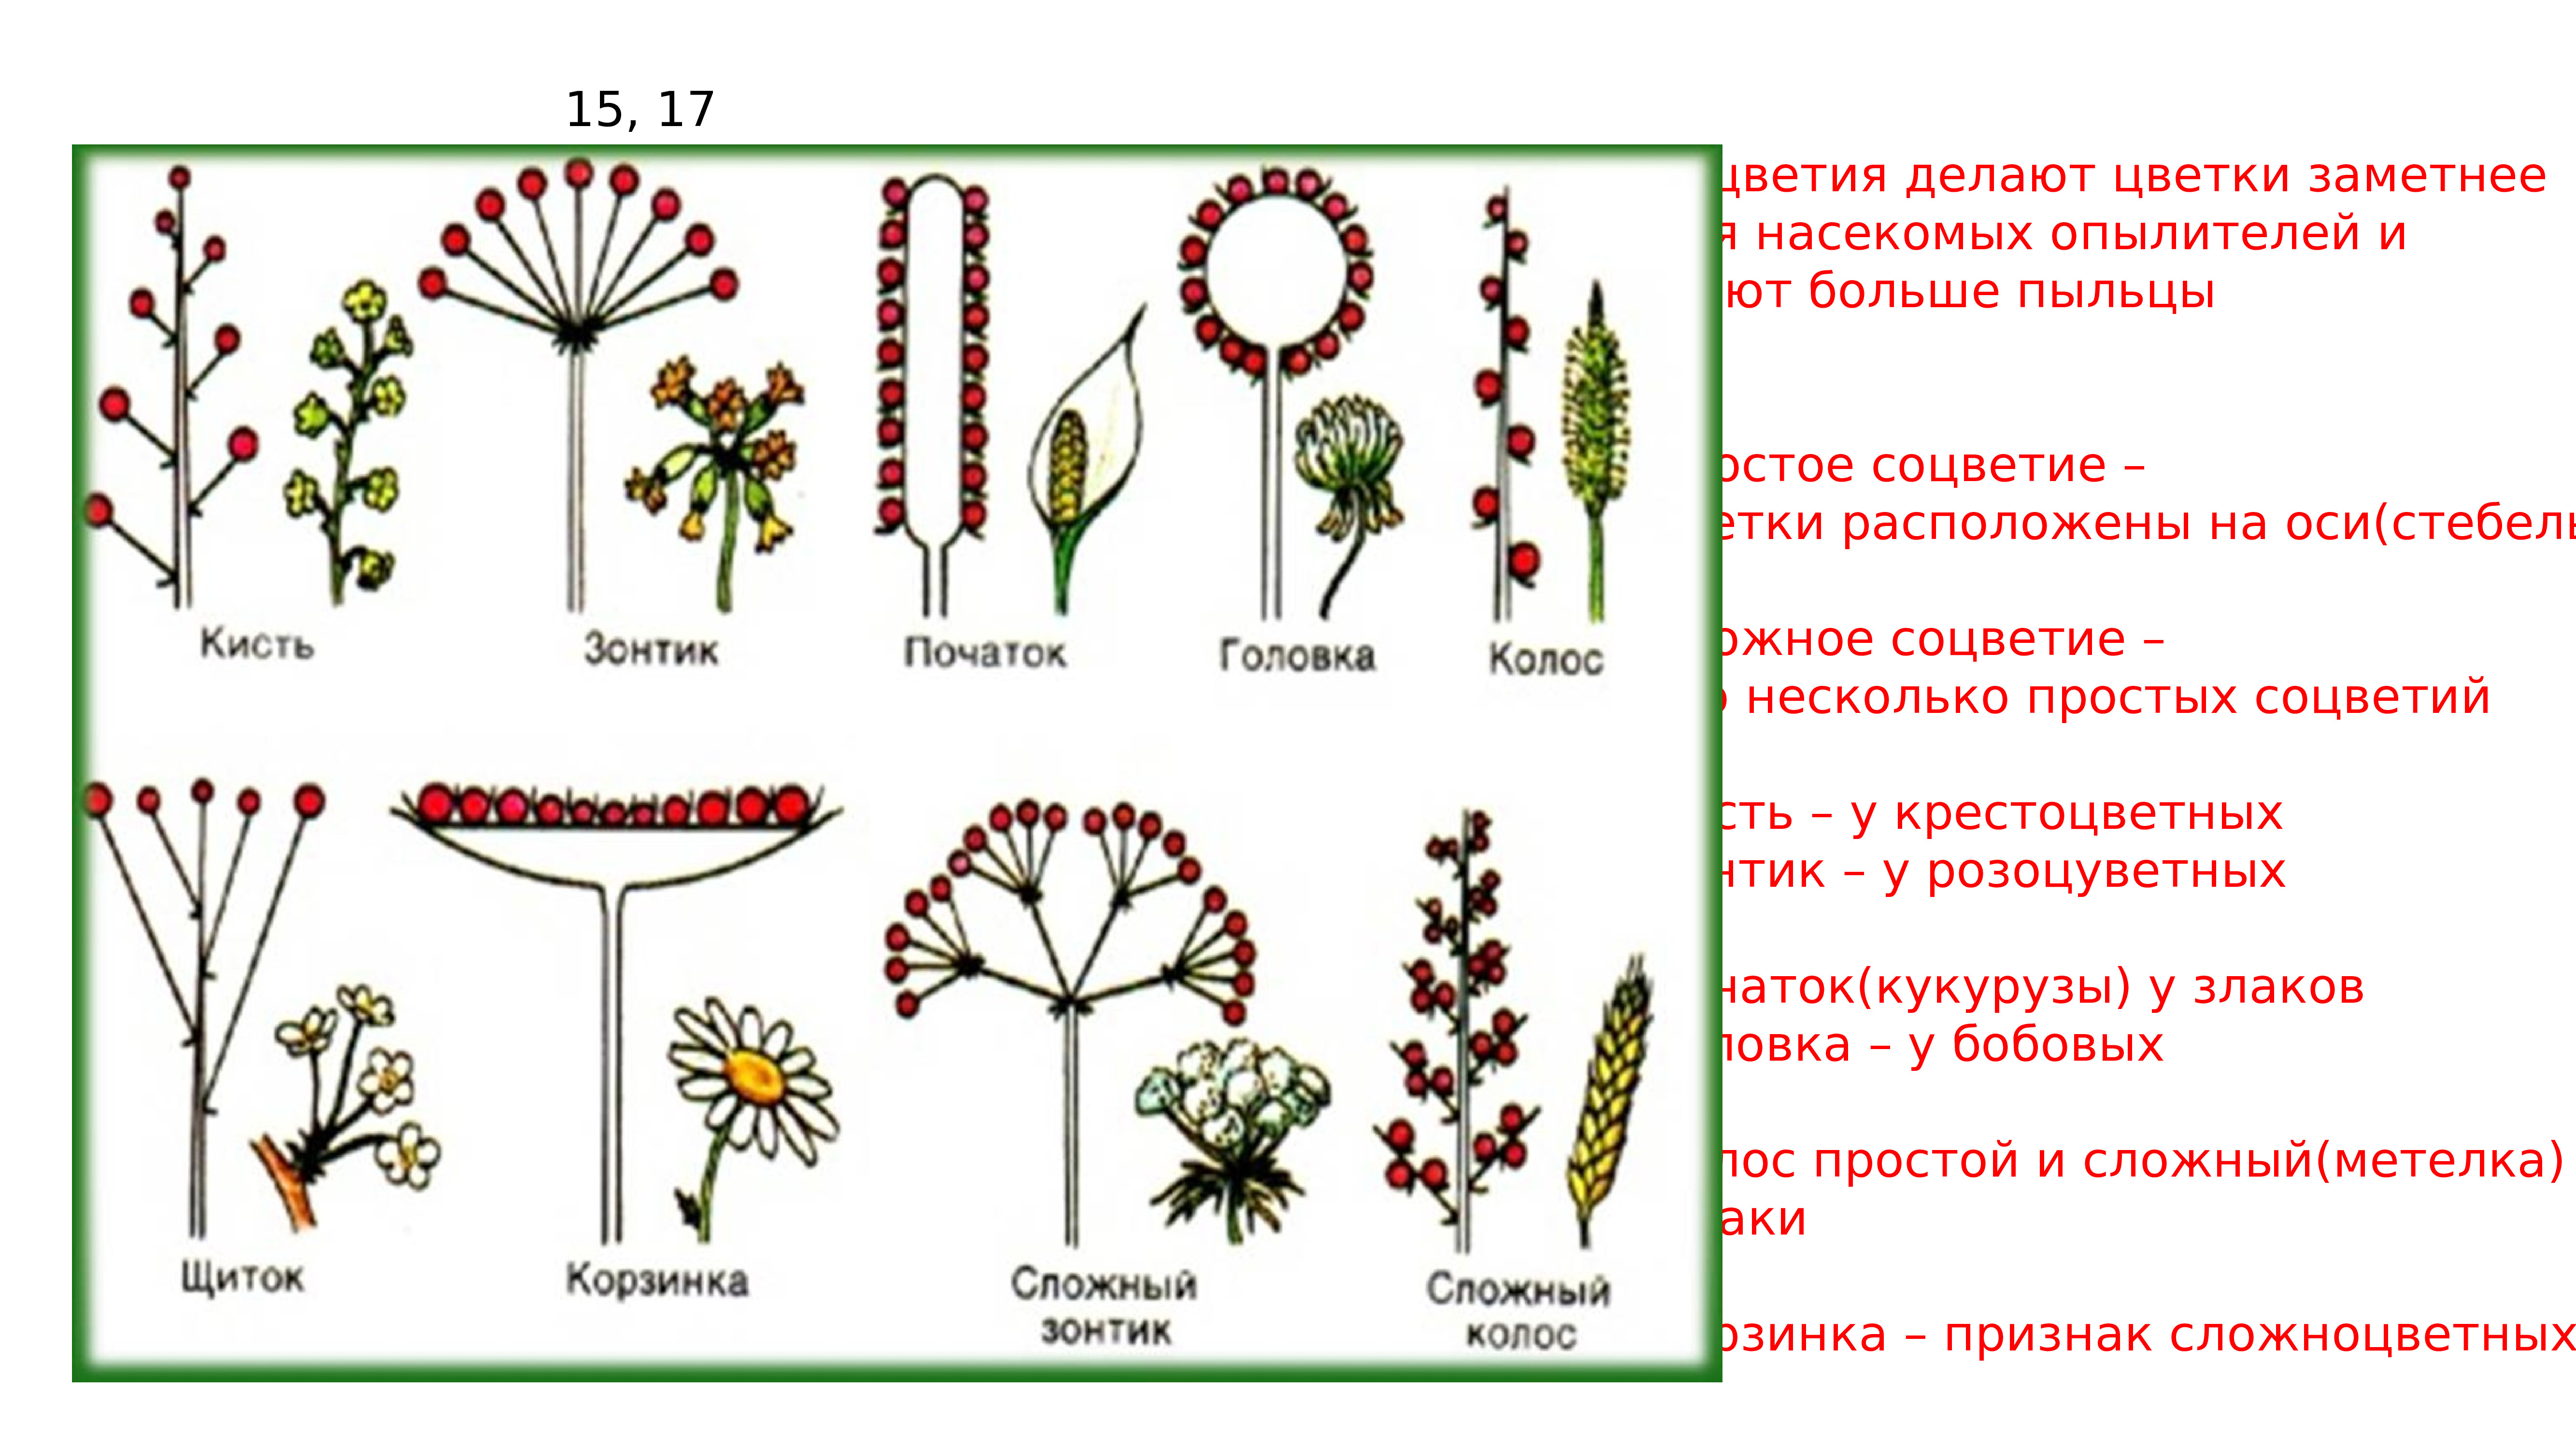 Щитковидно-метельчатые соцветия